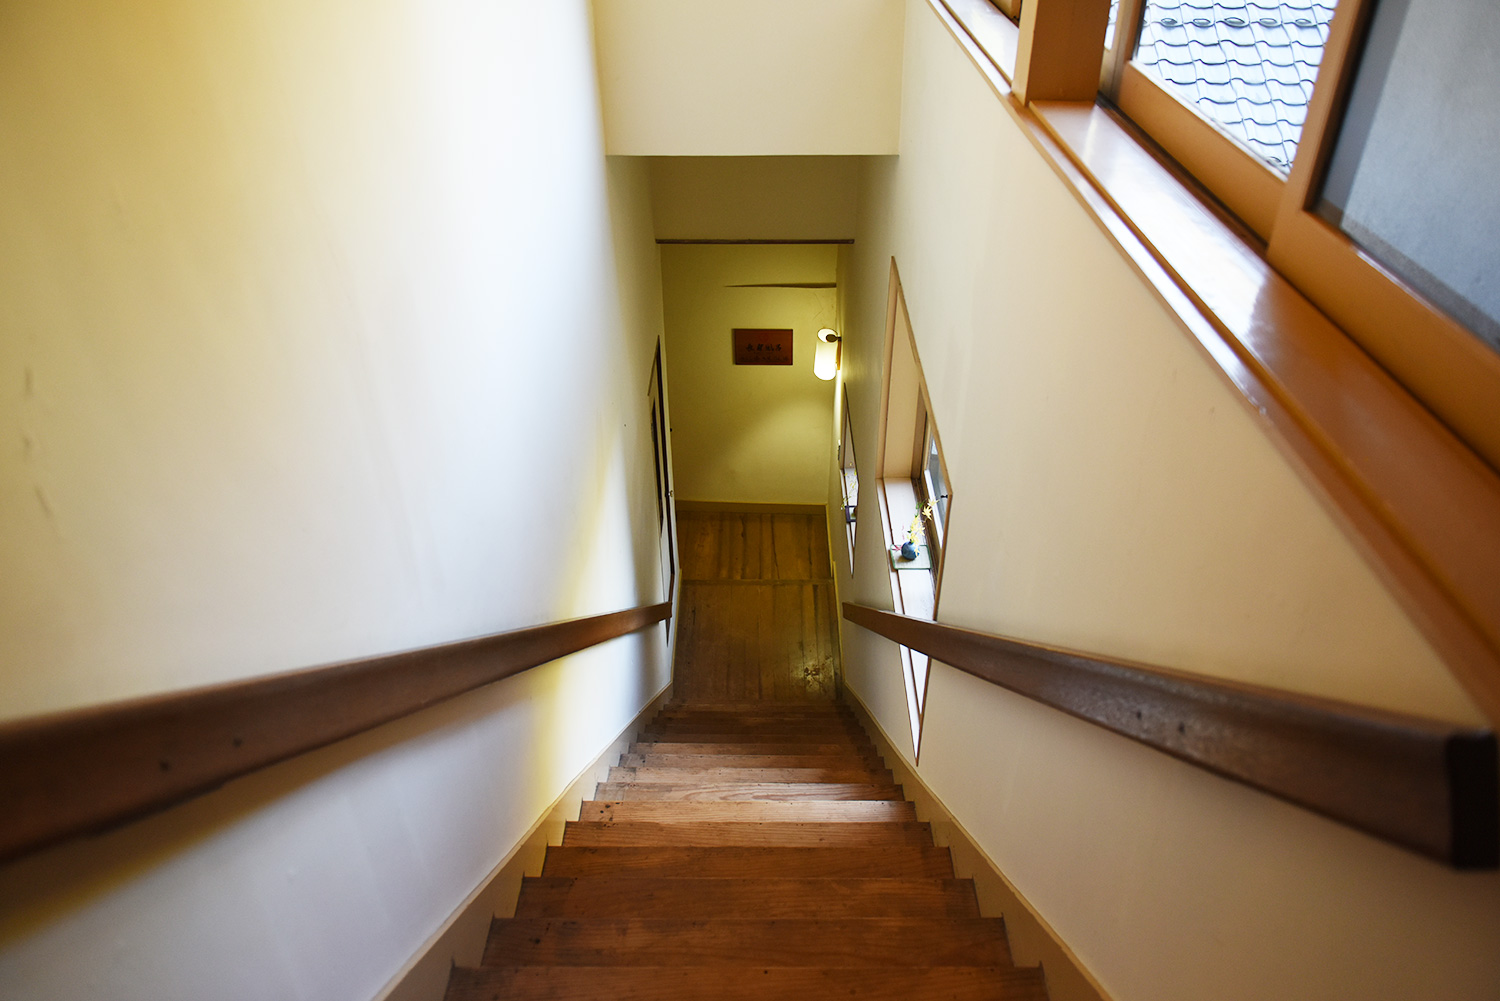 【スイート 福寿】客室からフロアへ降りる階段